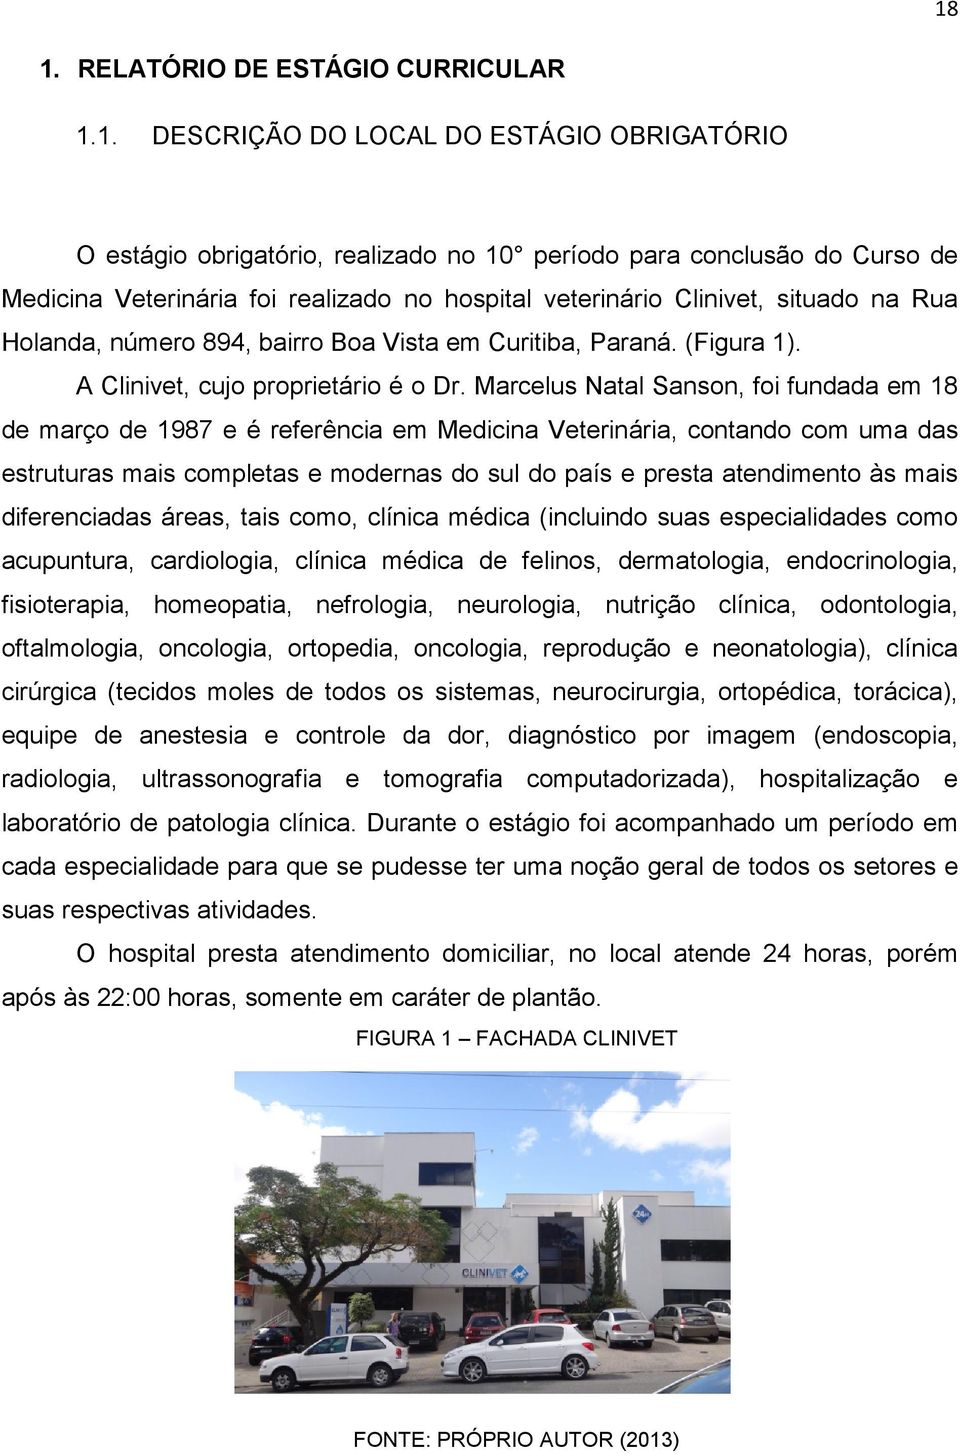 Marcelus Natal Sanson, foi fundada em 18 de março de 1987 e é referência em Medicina Veterinária, contando com uma das estruturas mais completas e modernas do sul do país e presta atendimento às mais